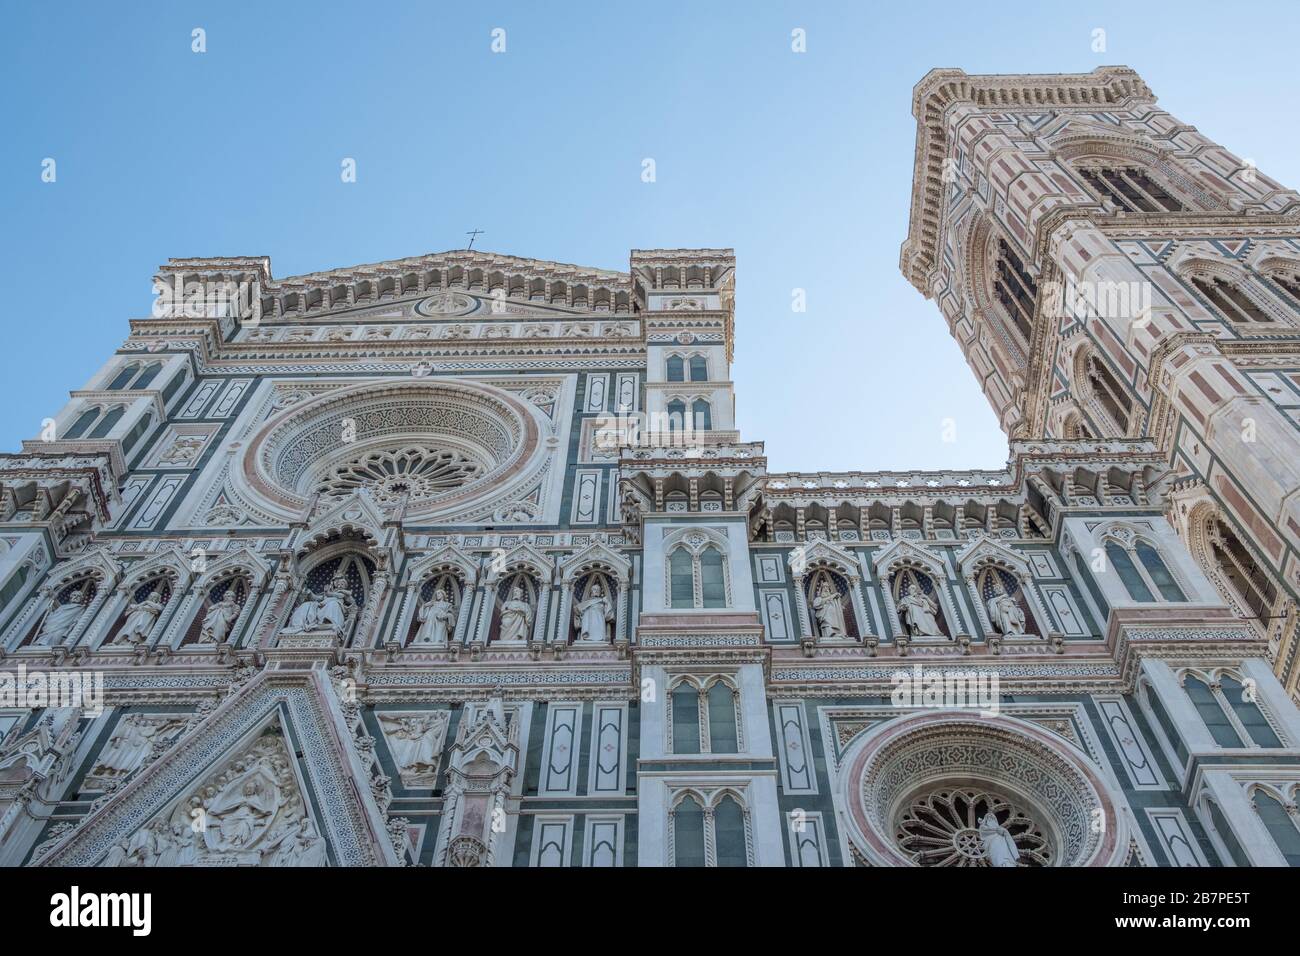 Façade très décorée de la cathédrale de Florence et de la tour Bell, prise de dessous et regardant jusqu'au ciel bleu clair. Banque D'Images